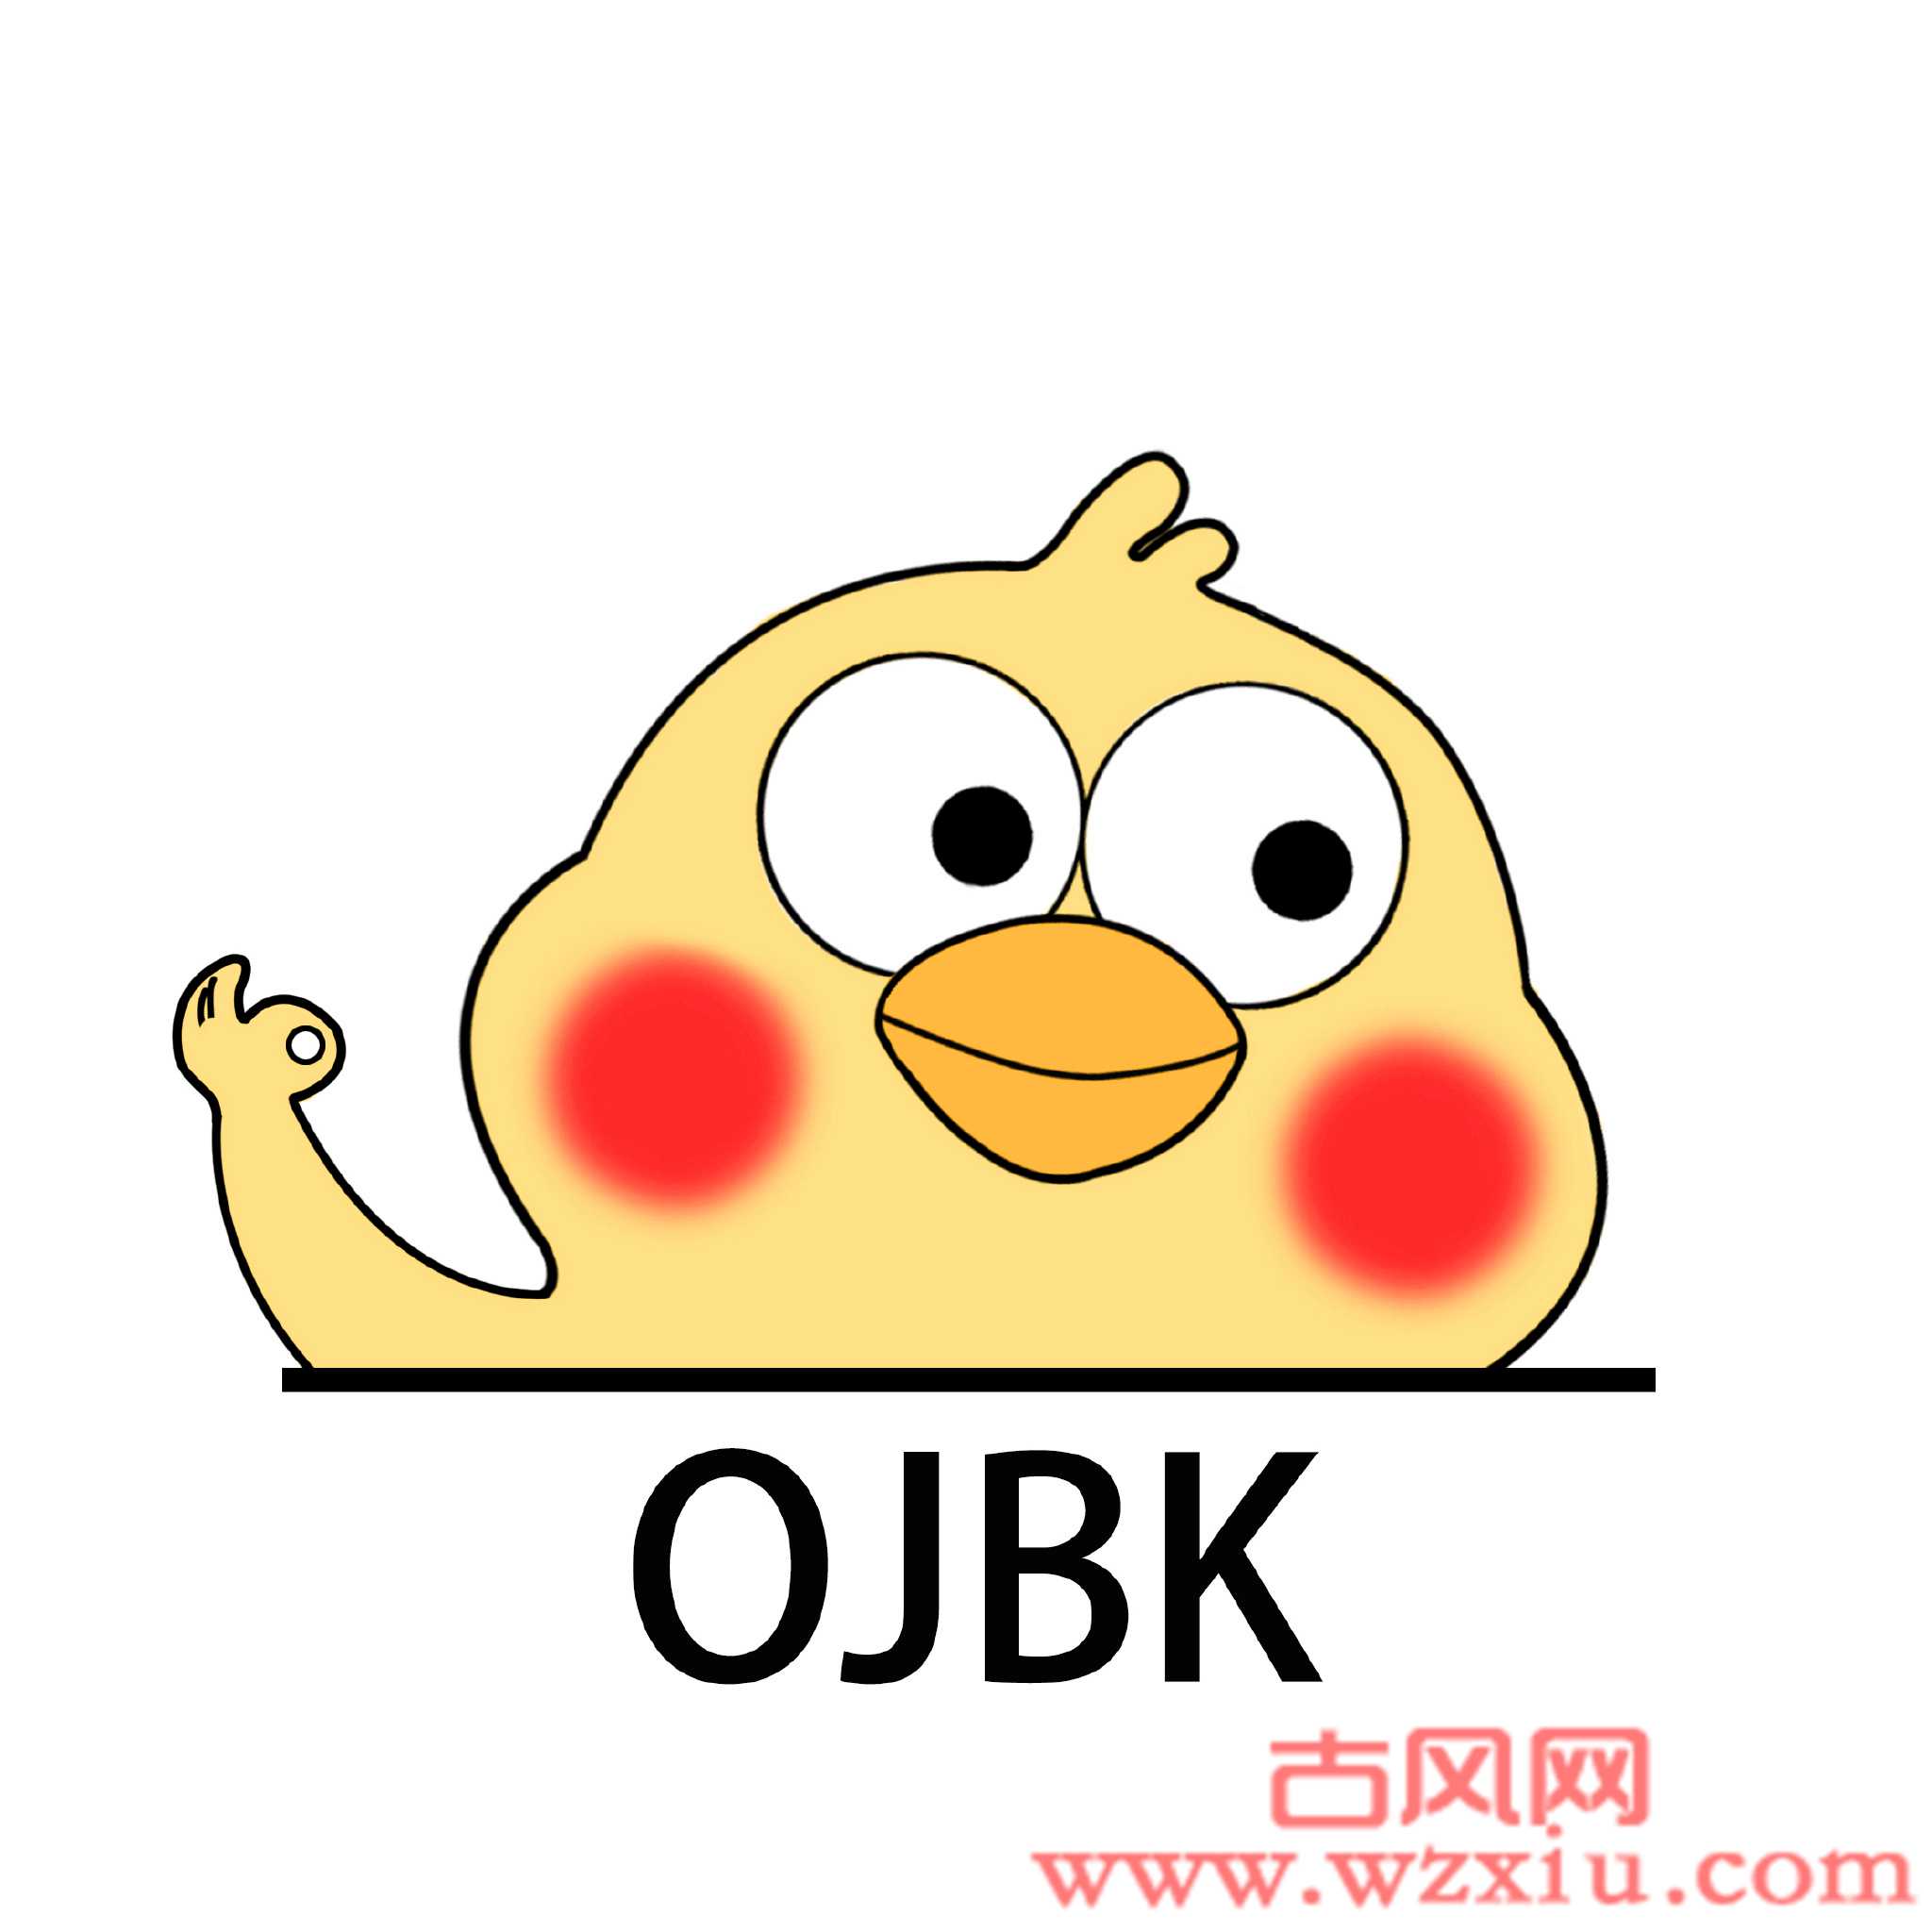 ojbk什么意思网络用语，是骂人的吗-古风网络博客